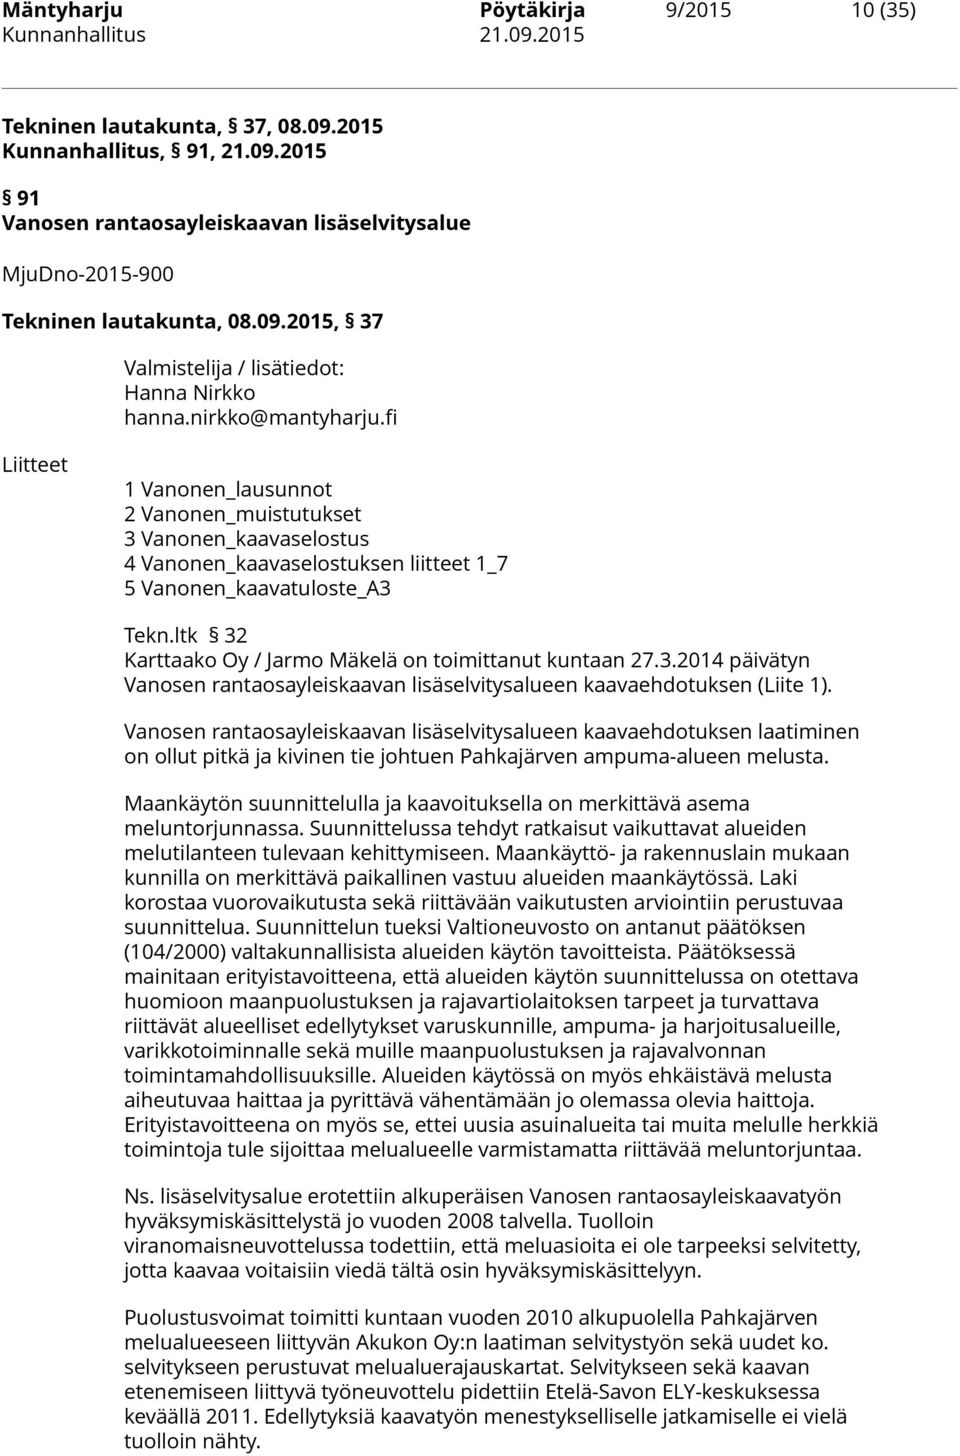 ltk 32 Karttaako Oy / Jarmo Mäkelä on toimittanut kuntaan 27.3.2014 päivätyn Vanosen rantaosayleiskaavan lisäselvitysalueen kaavaehdotuksen (Liite 1).